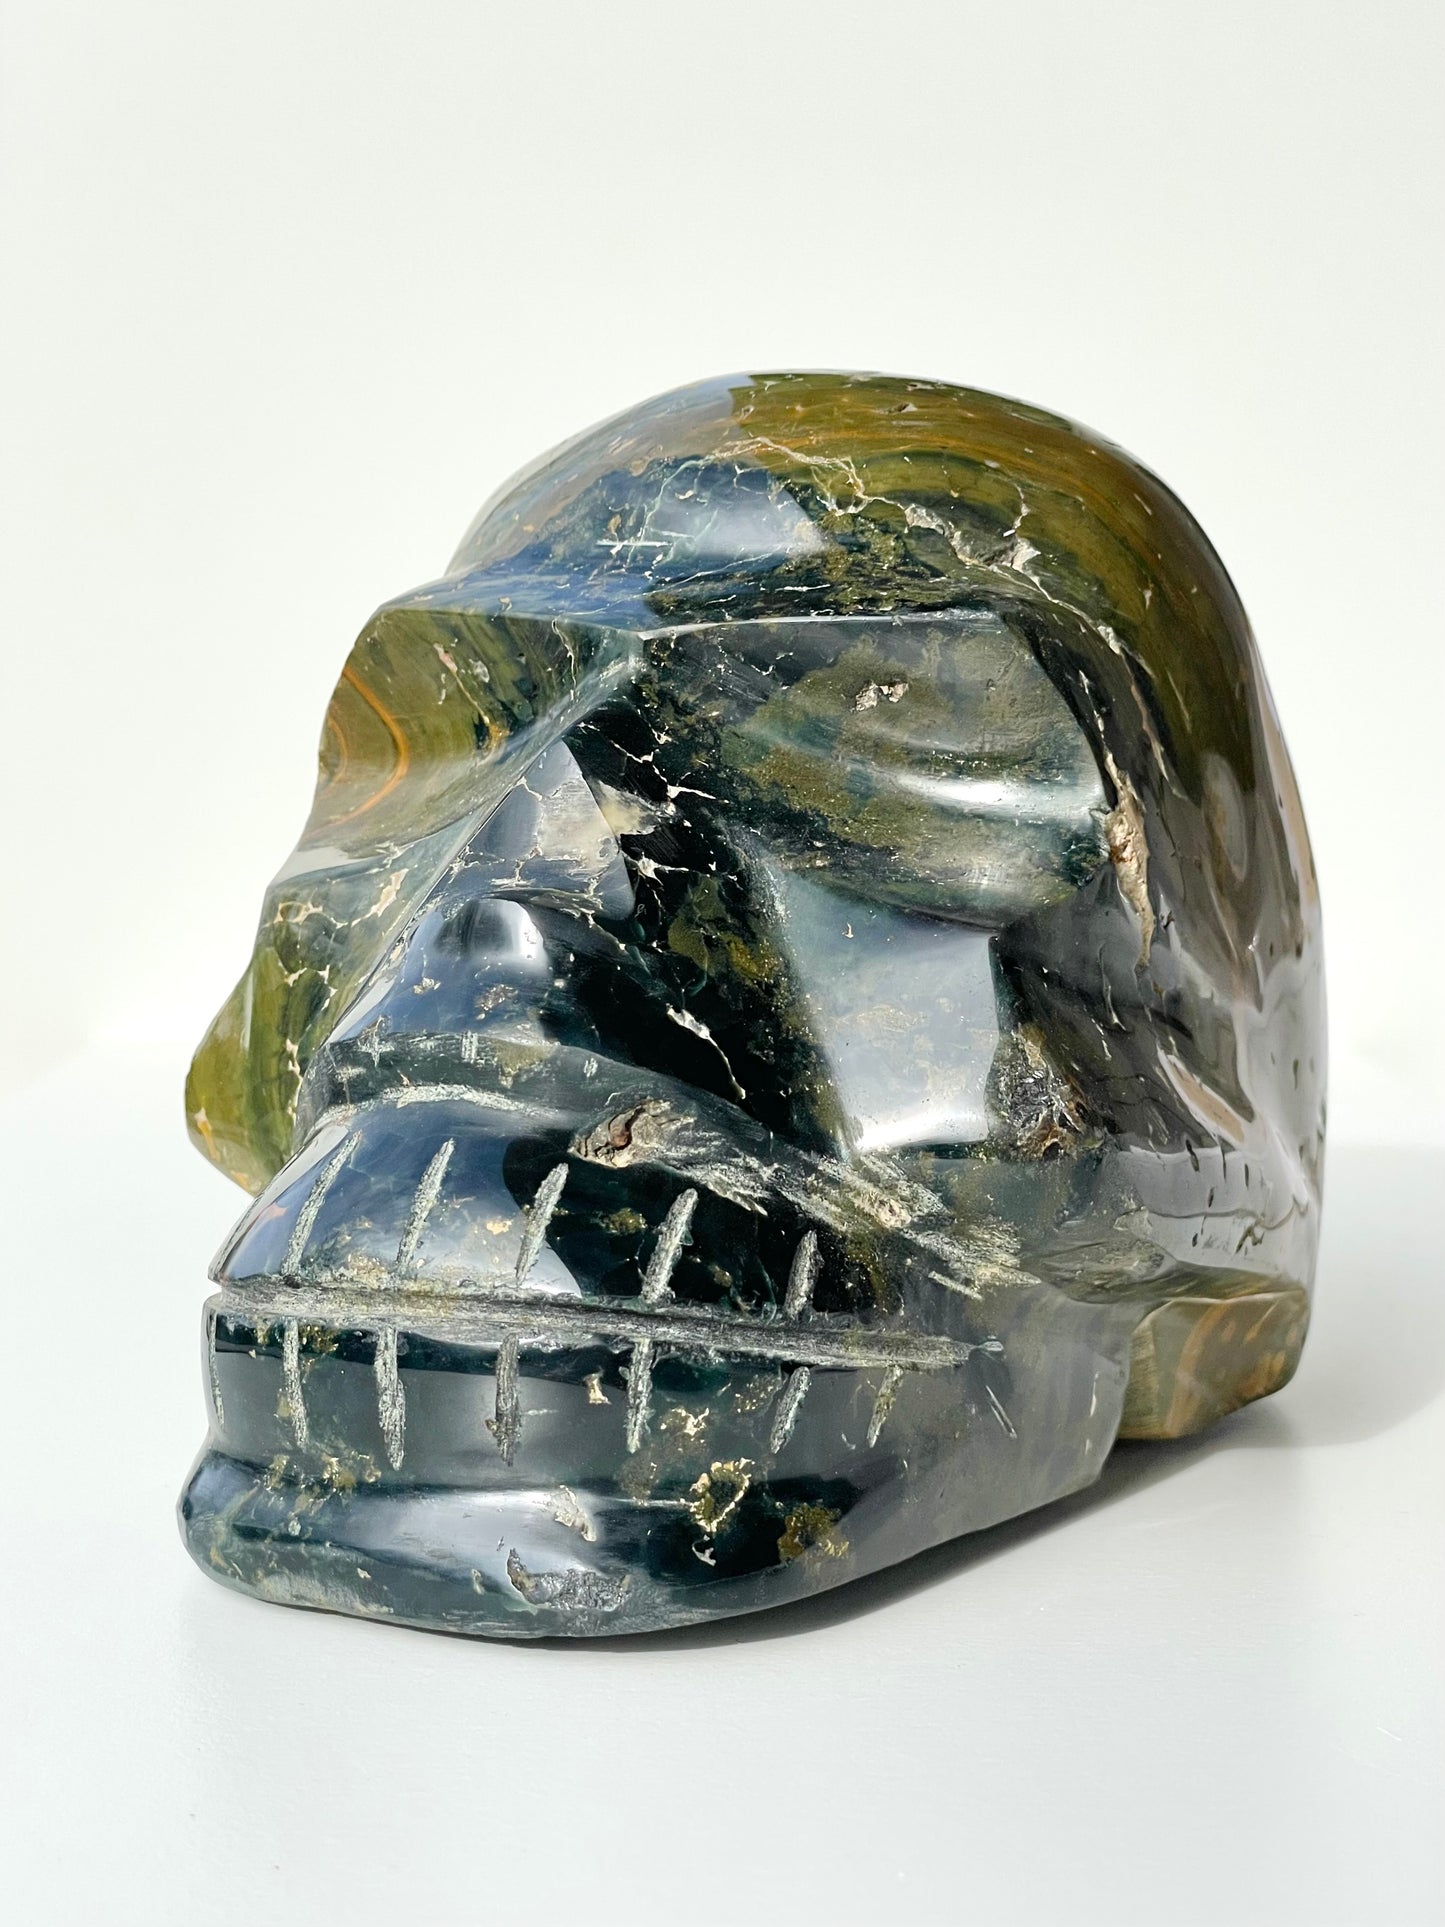 Jack the Crystal Skull